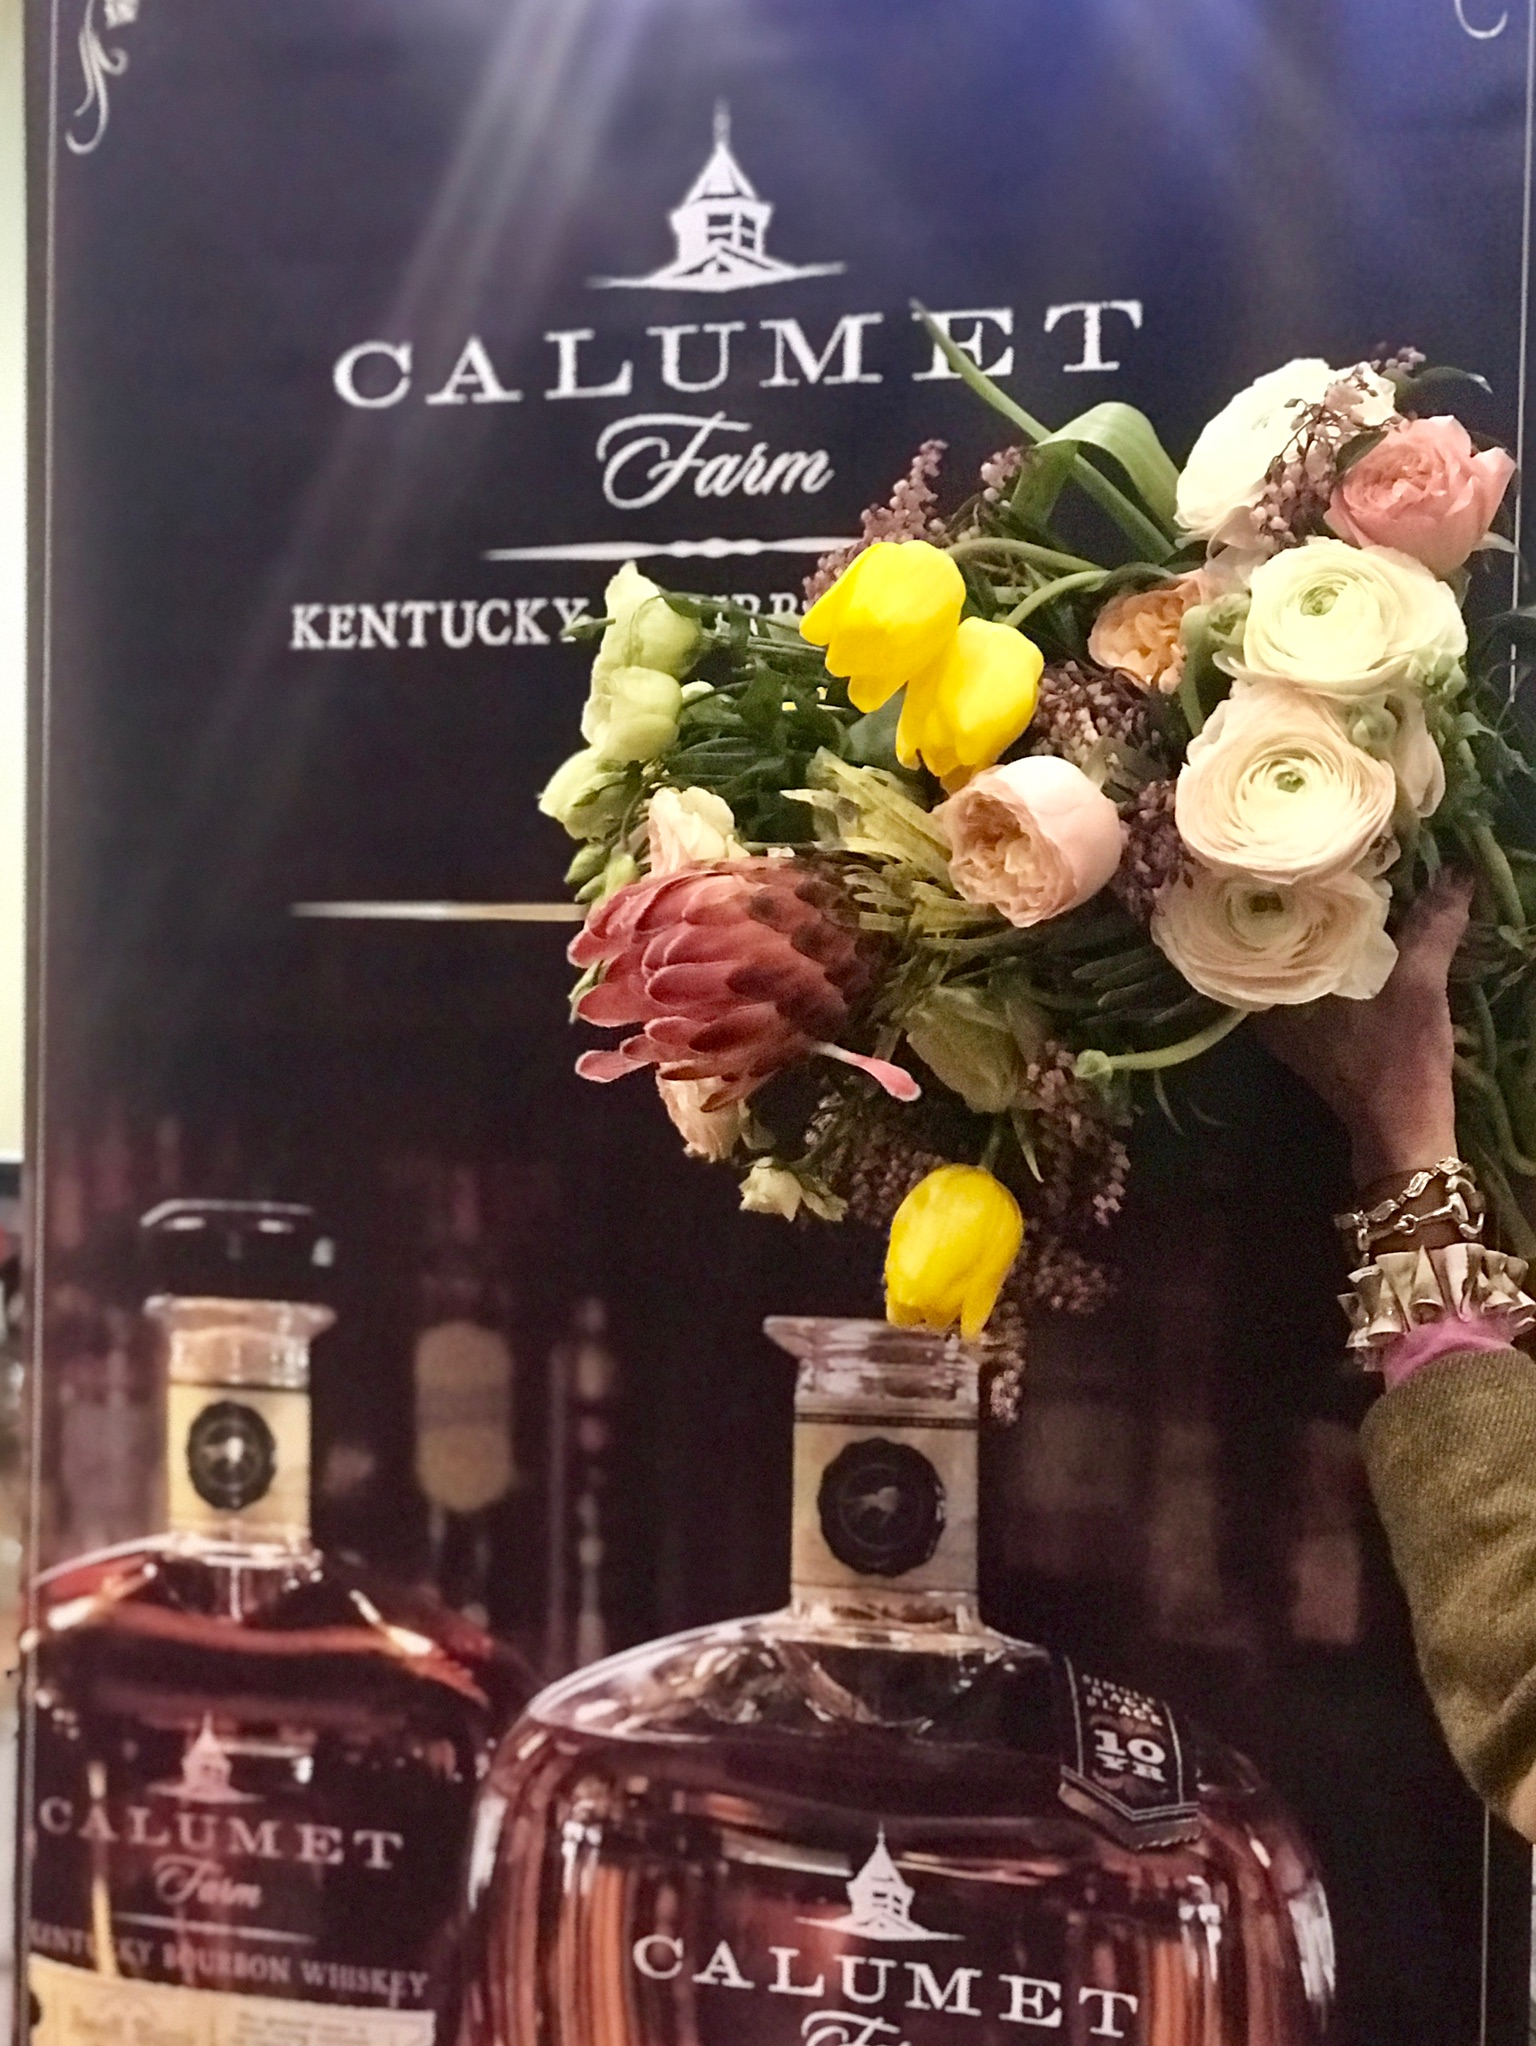 Calumet Farms bourbon & Roiann Ridley bouquet